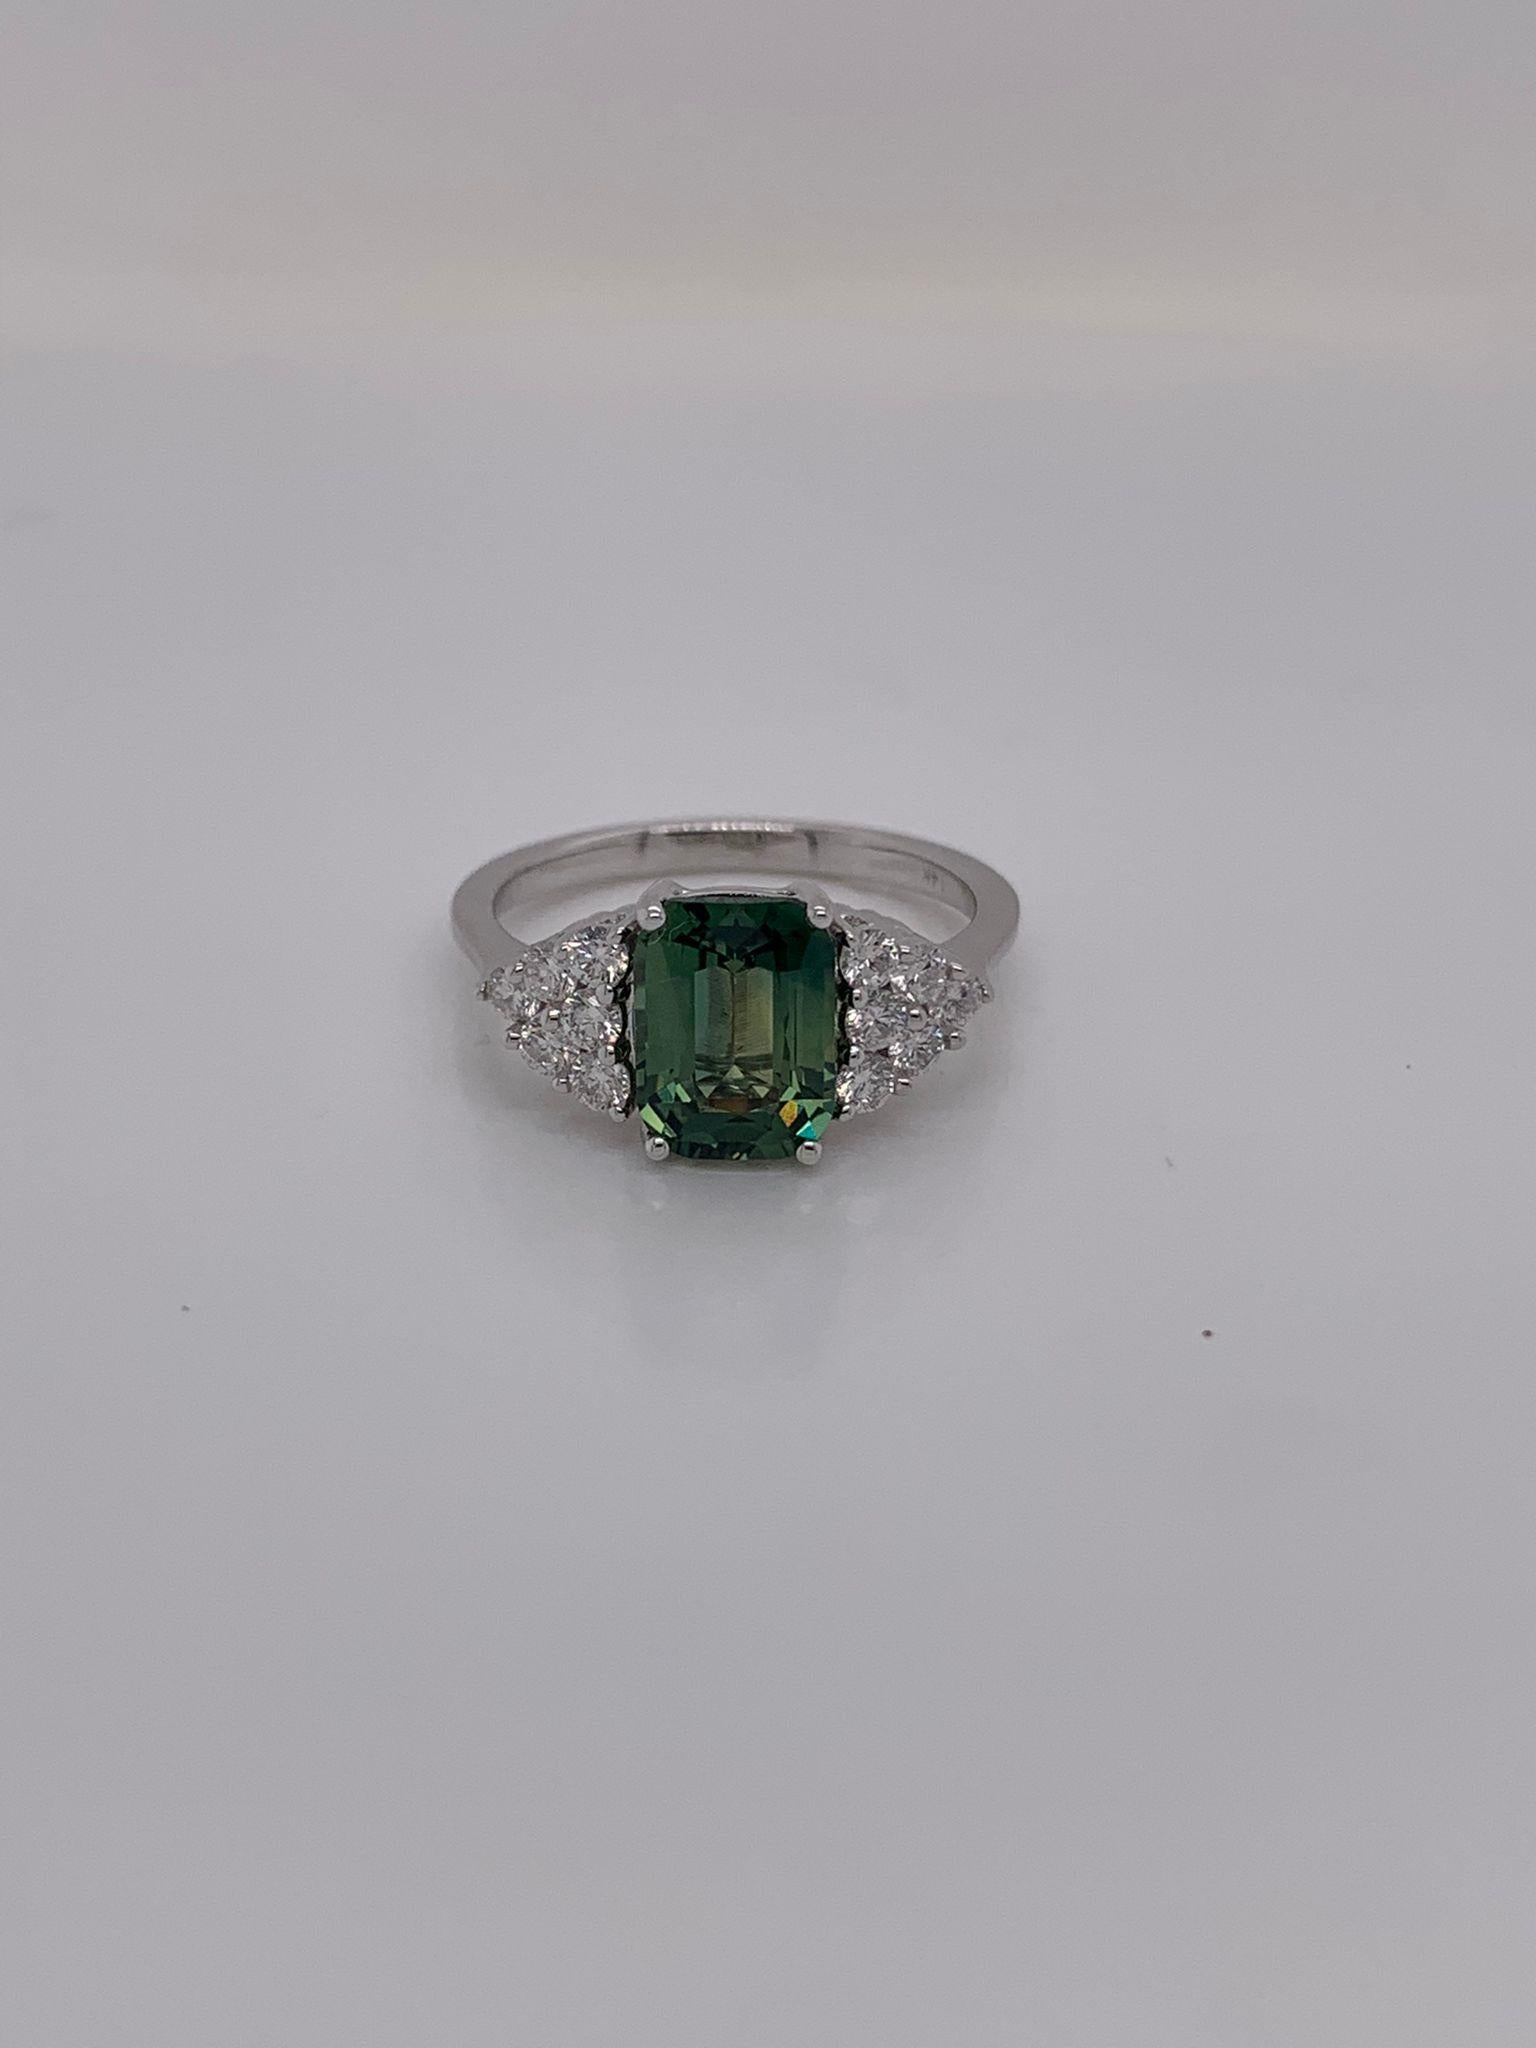 Saphir vert coussin pesant 2,58 cts.
Mesure (8,7x6,5) mm 
12 diamants ronds pesant 0,42 ct.
Bague en or blanc 14K